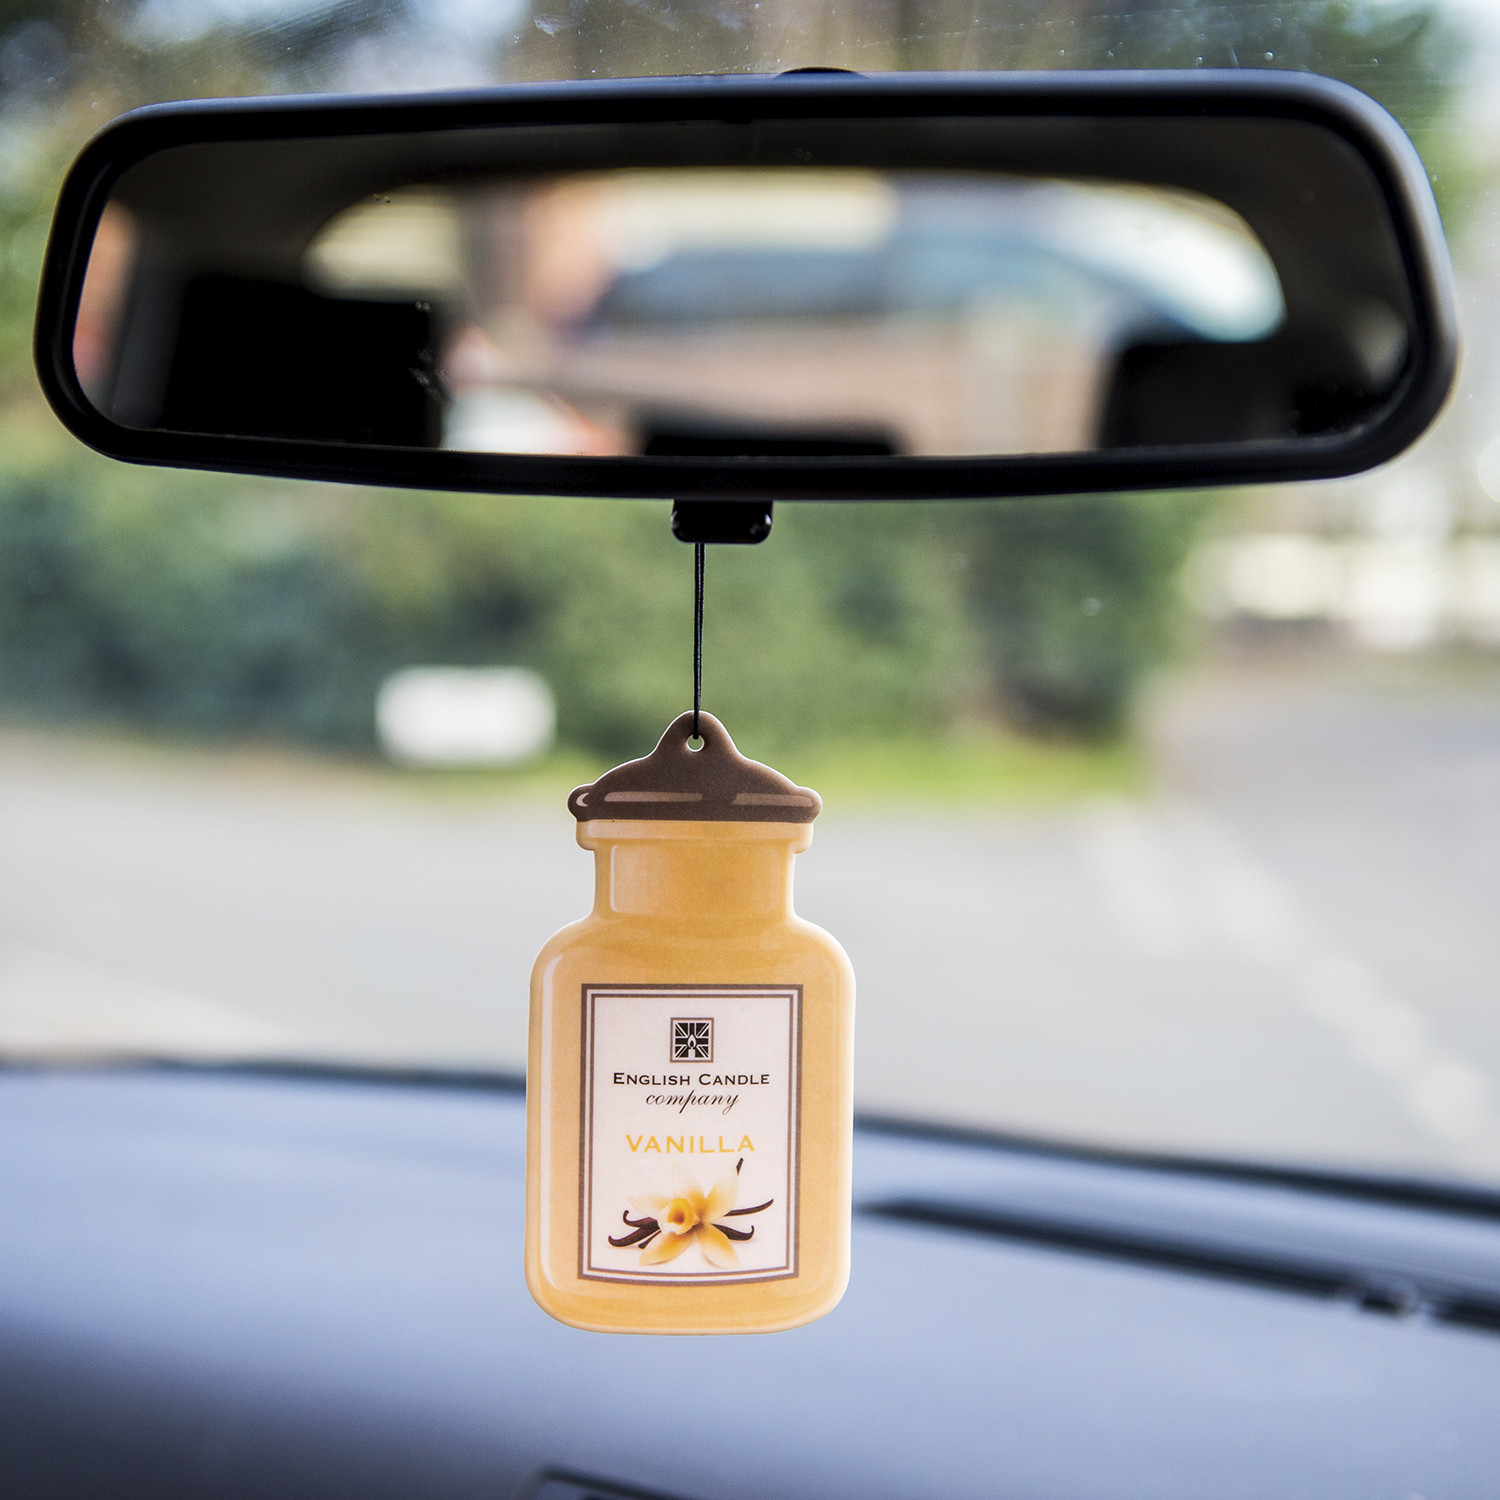 English Candle Company 2D Car Air Freshener - Vanilla Image 2